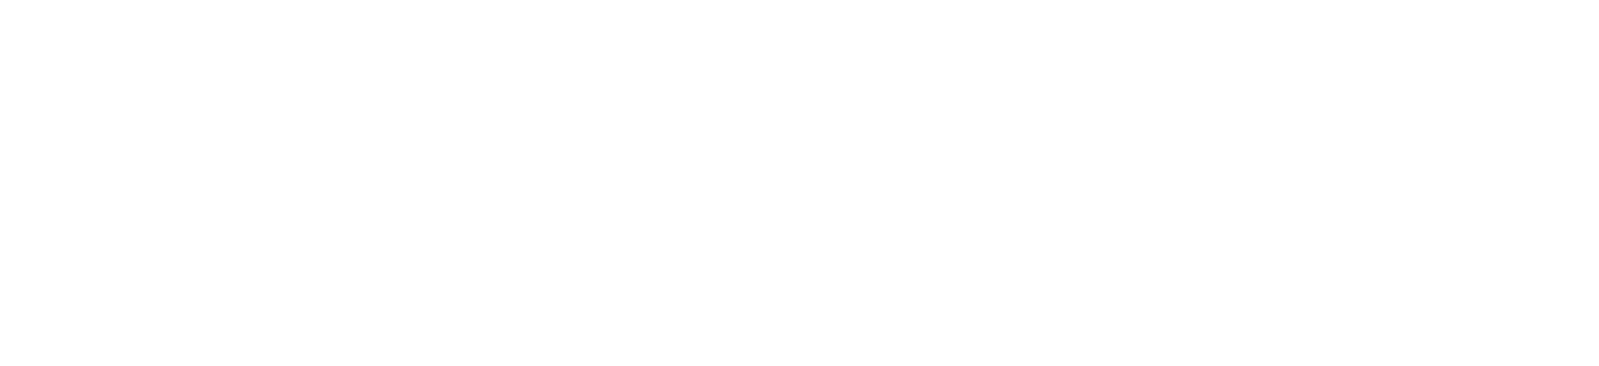 AVEVA logo large for dark backgrounds (transparent PNG)